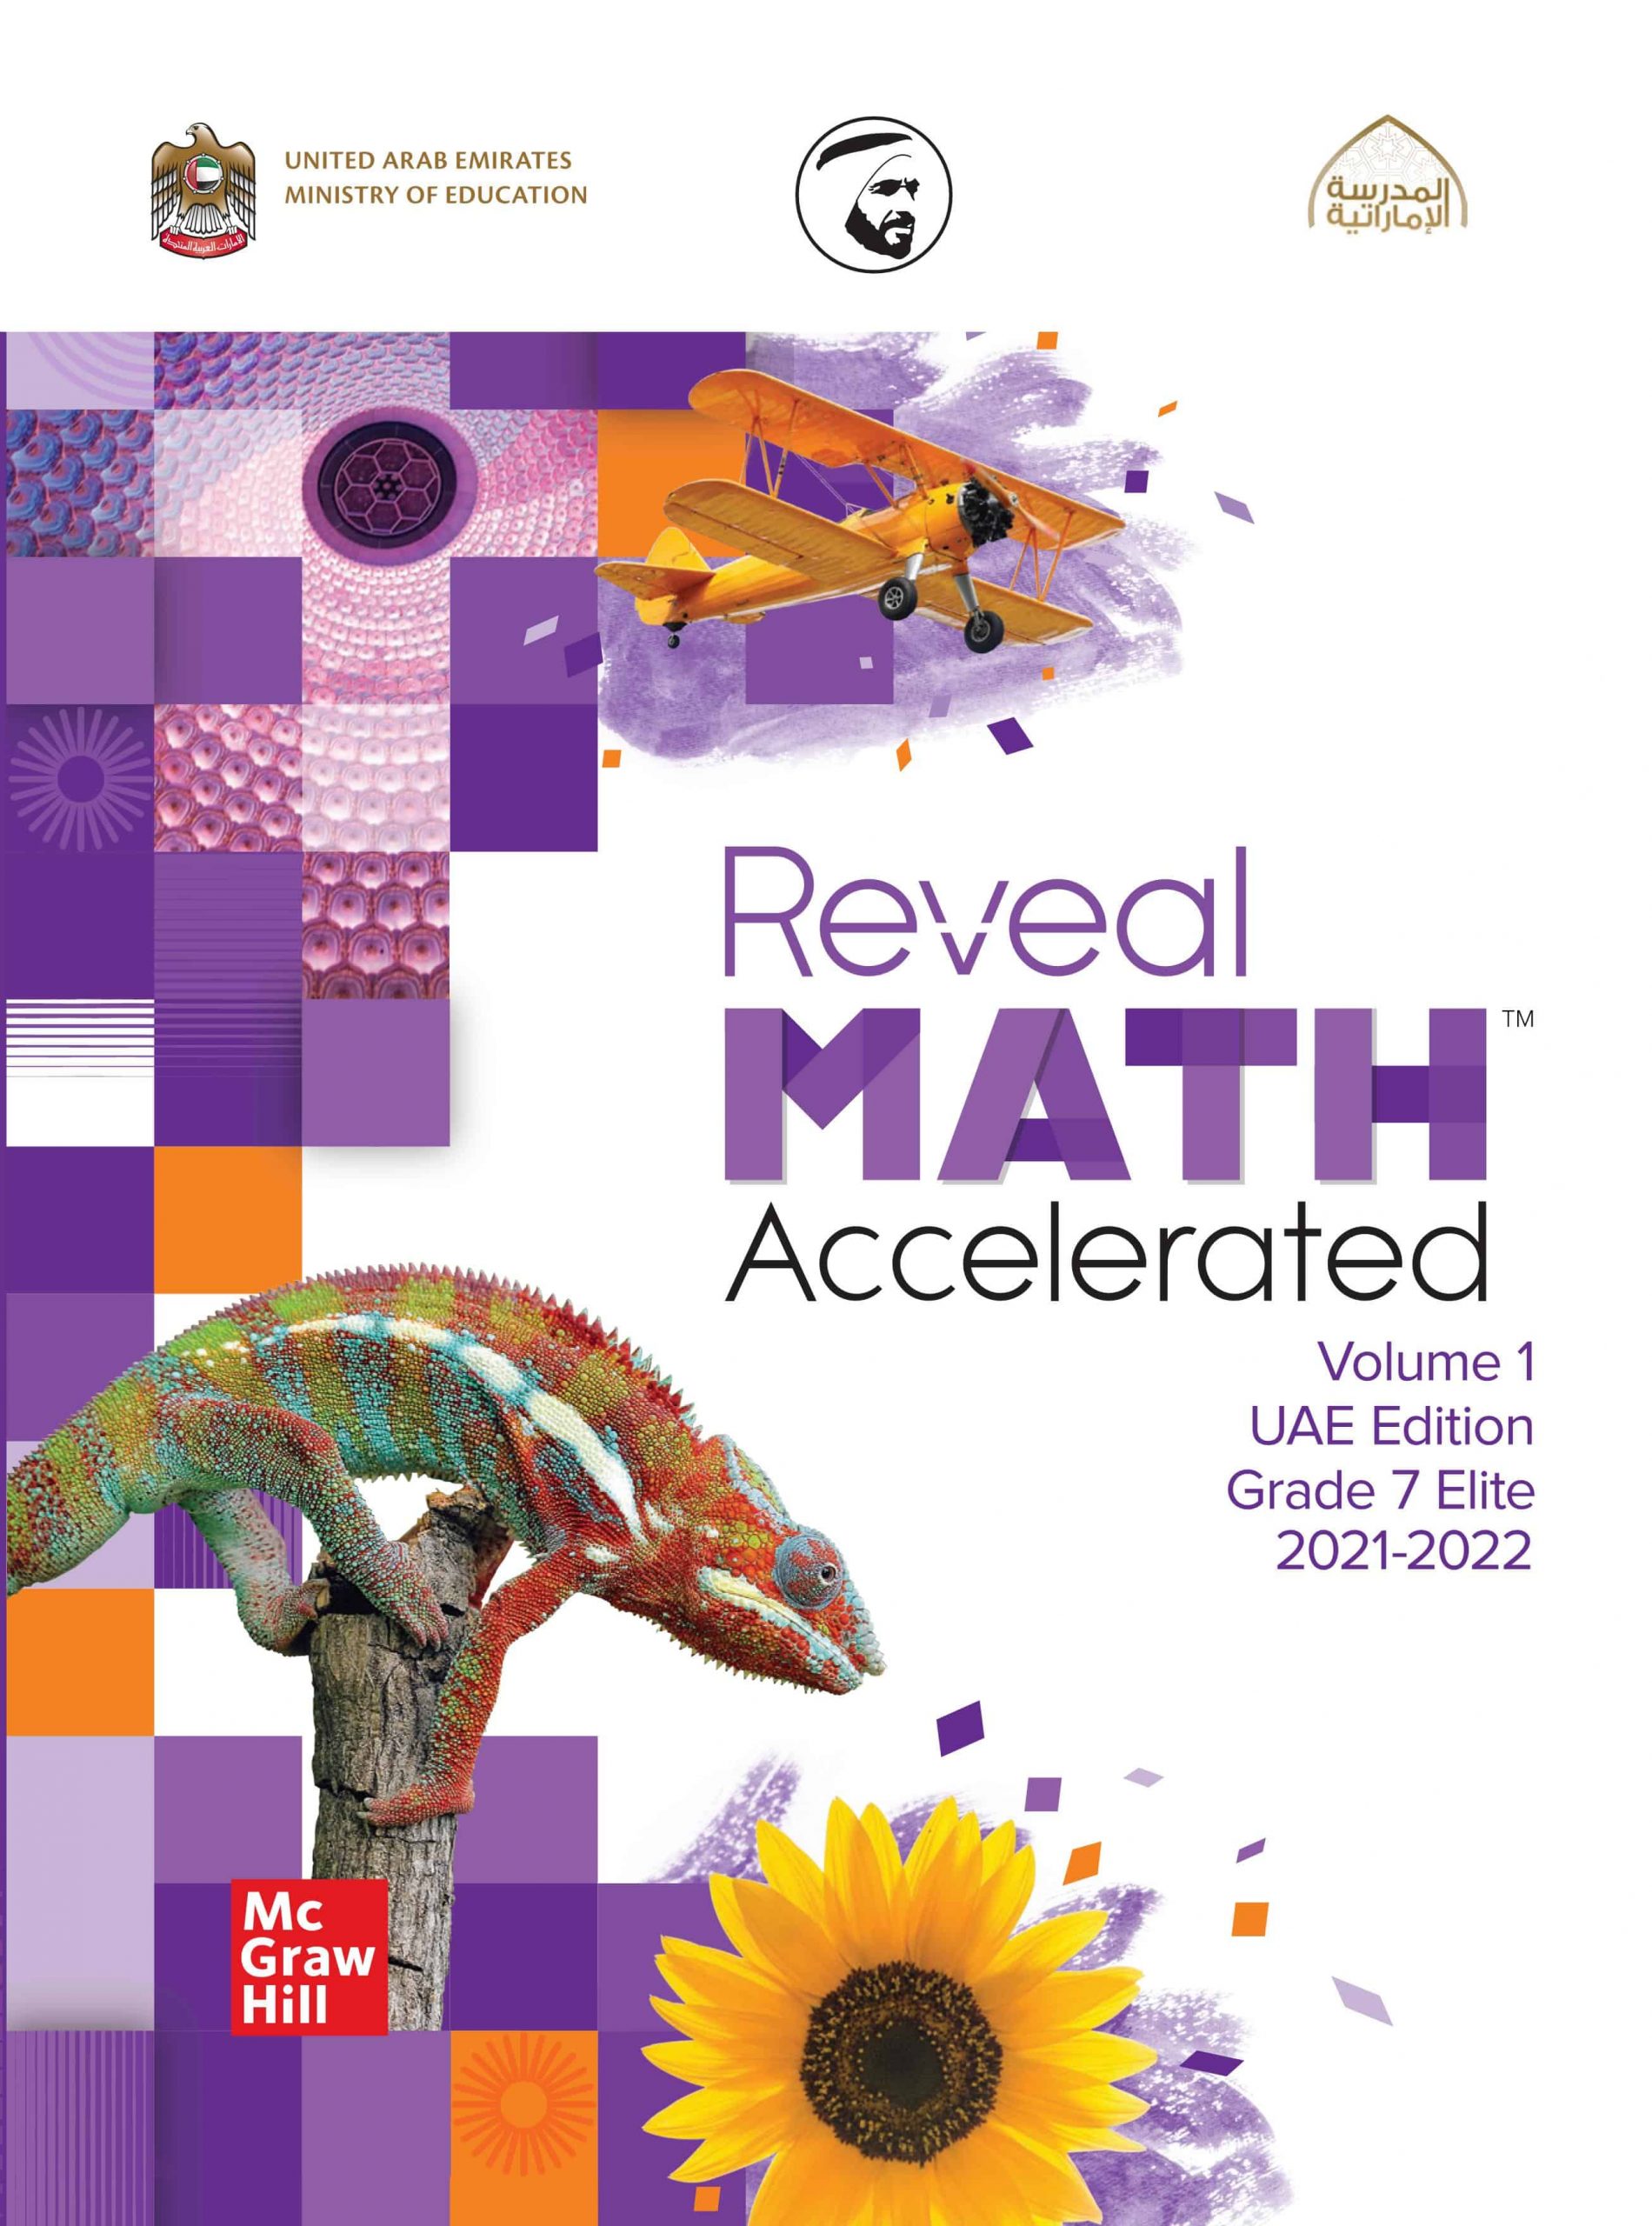 كتاب الطالب بالإنجليزي الرياضيات المتكاملة الصف السابع الفصل الدراسي الأول 2021-2022